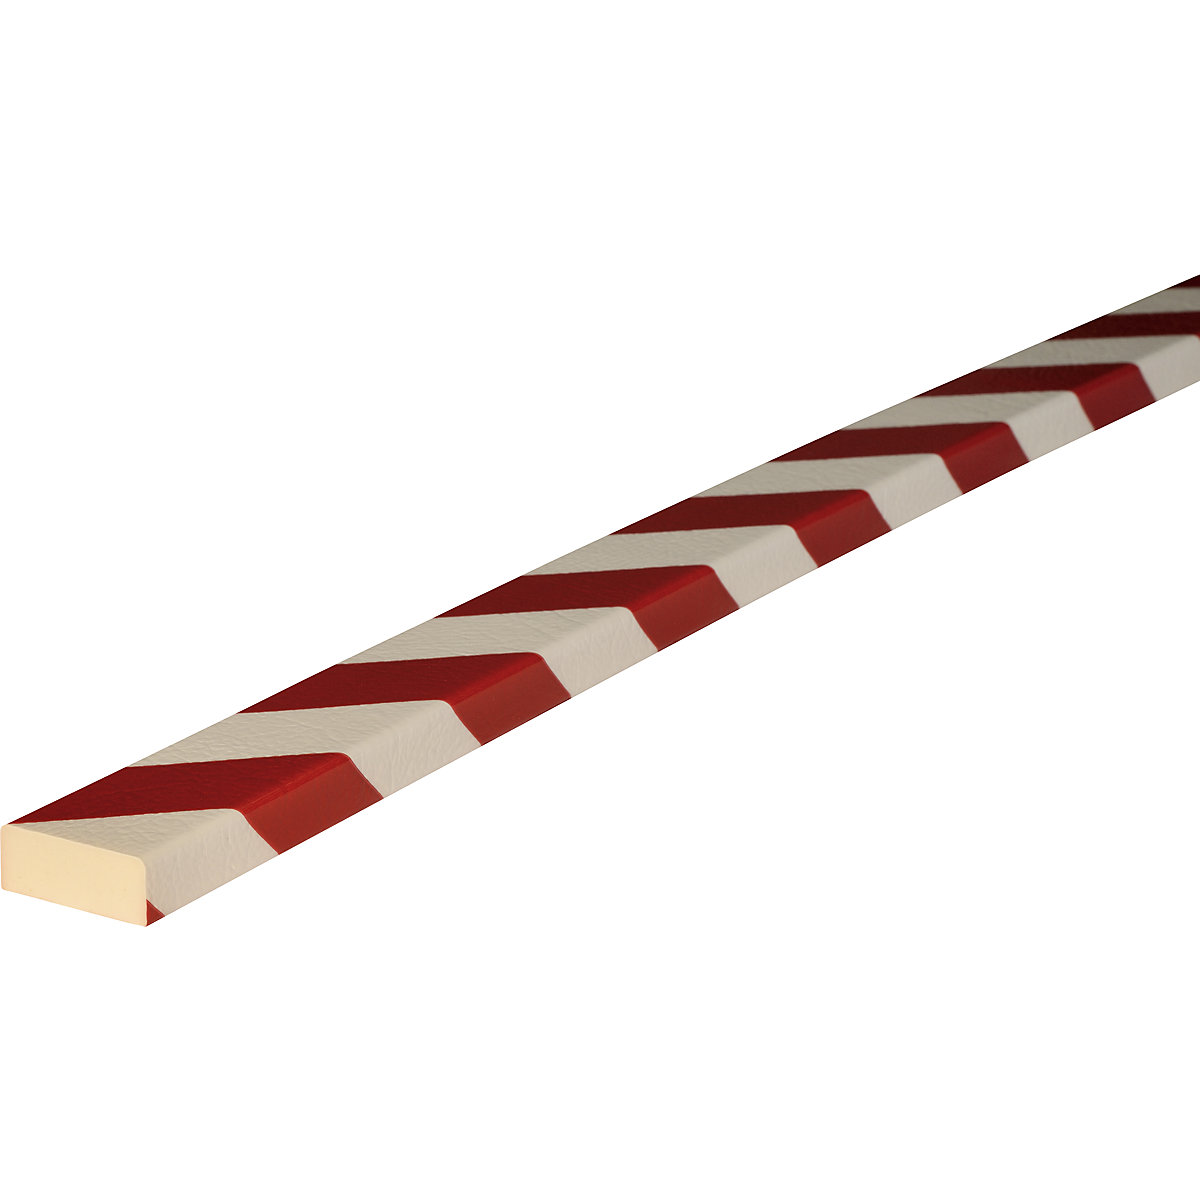 Knuffi®-oppervlaktebescherming – SHG, type D, 1 rol à 5 m, rood/wit-17